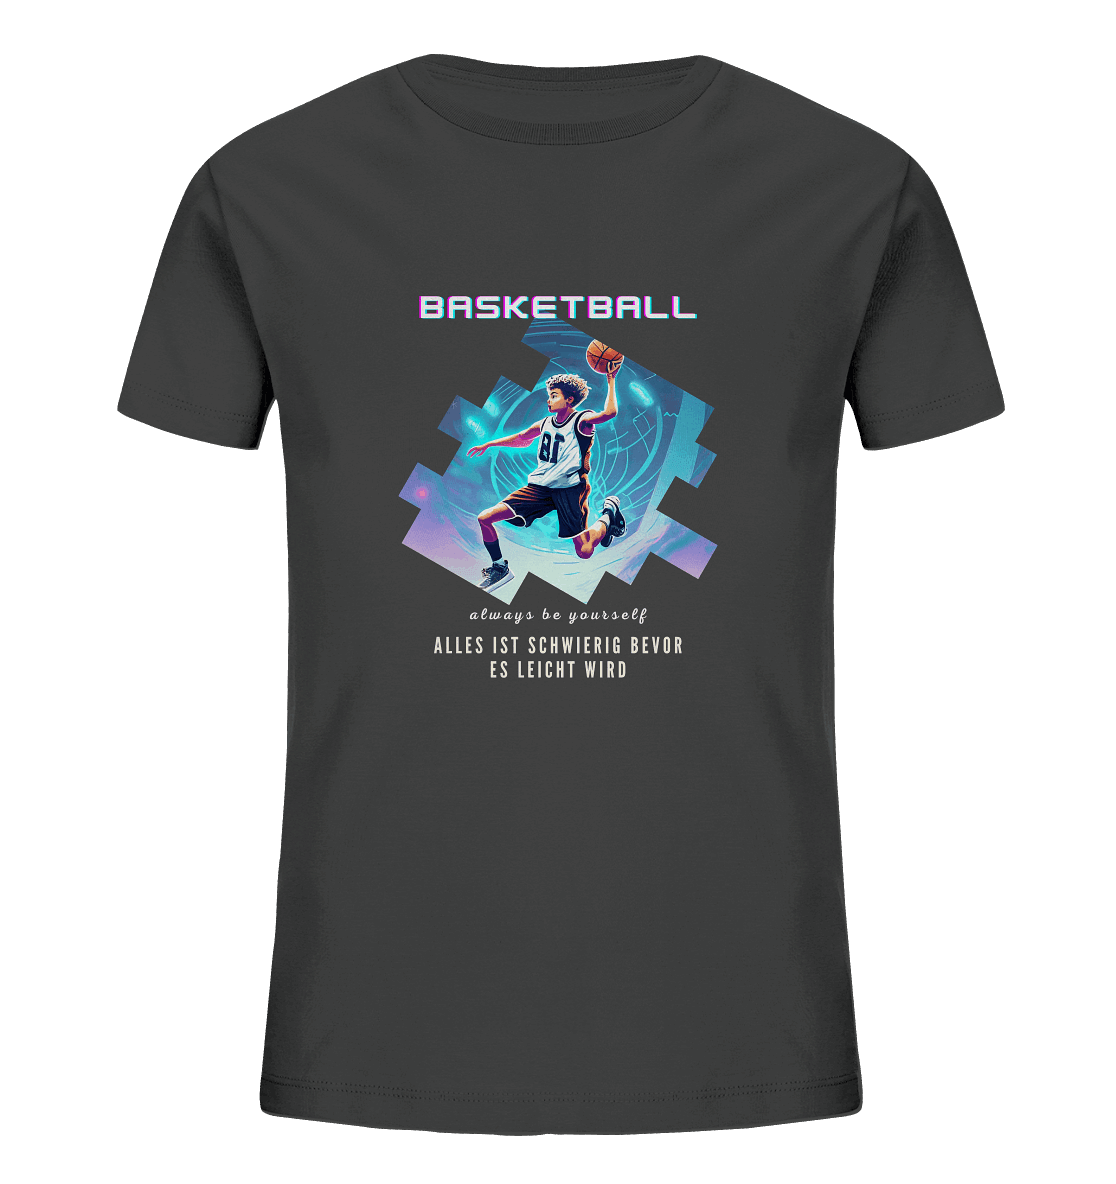 Alles ist schwierig bevor es leicht wird - Basketball - Kids Organic Shirt